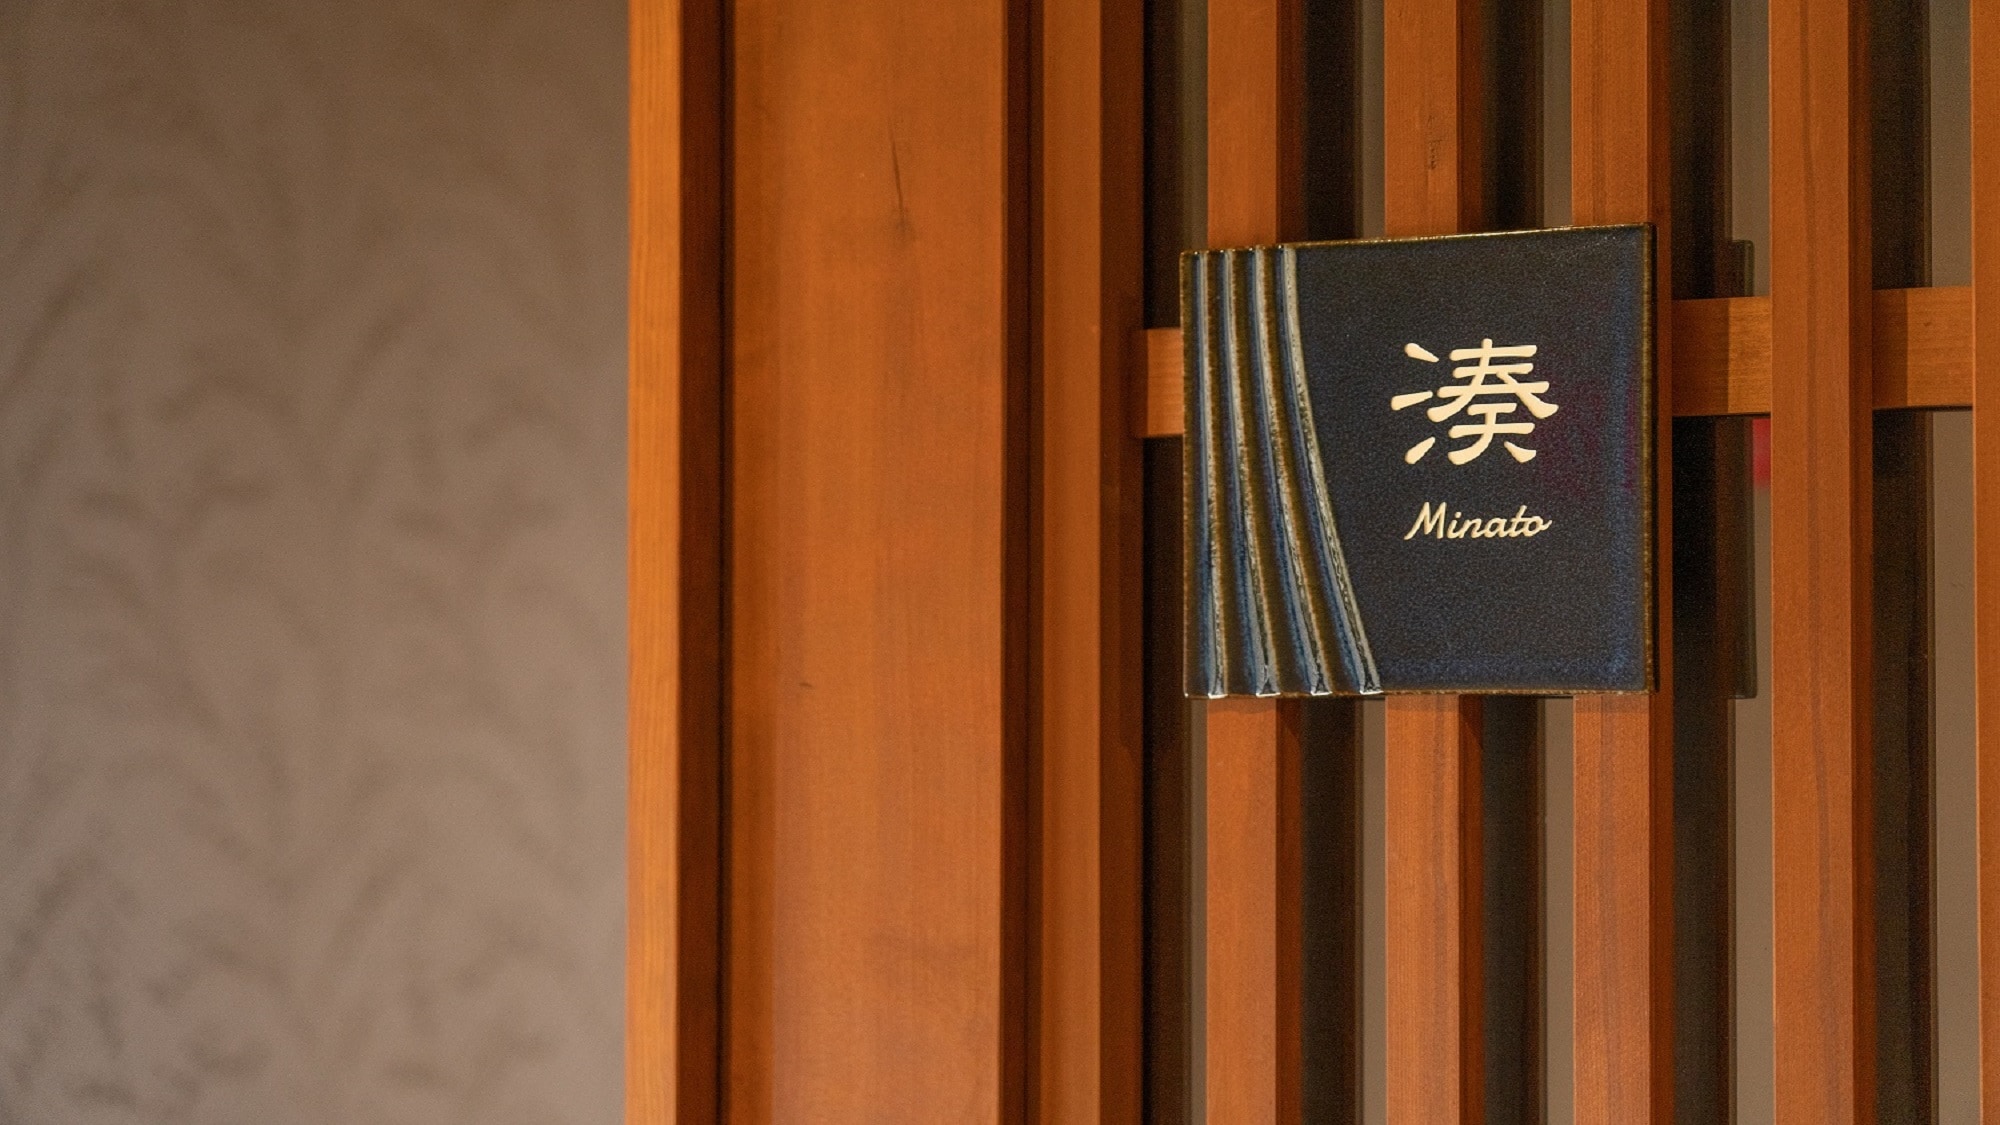 Special room "Minato minato" Room entrance [No smoking]